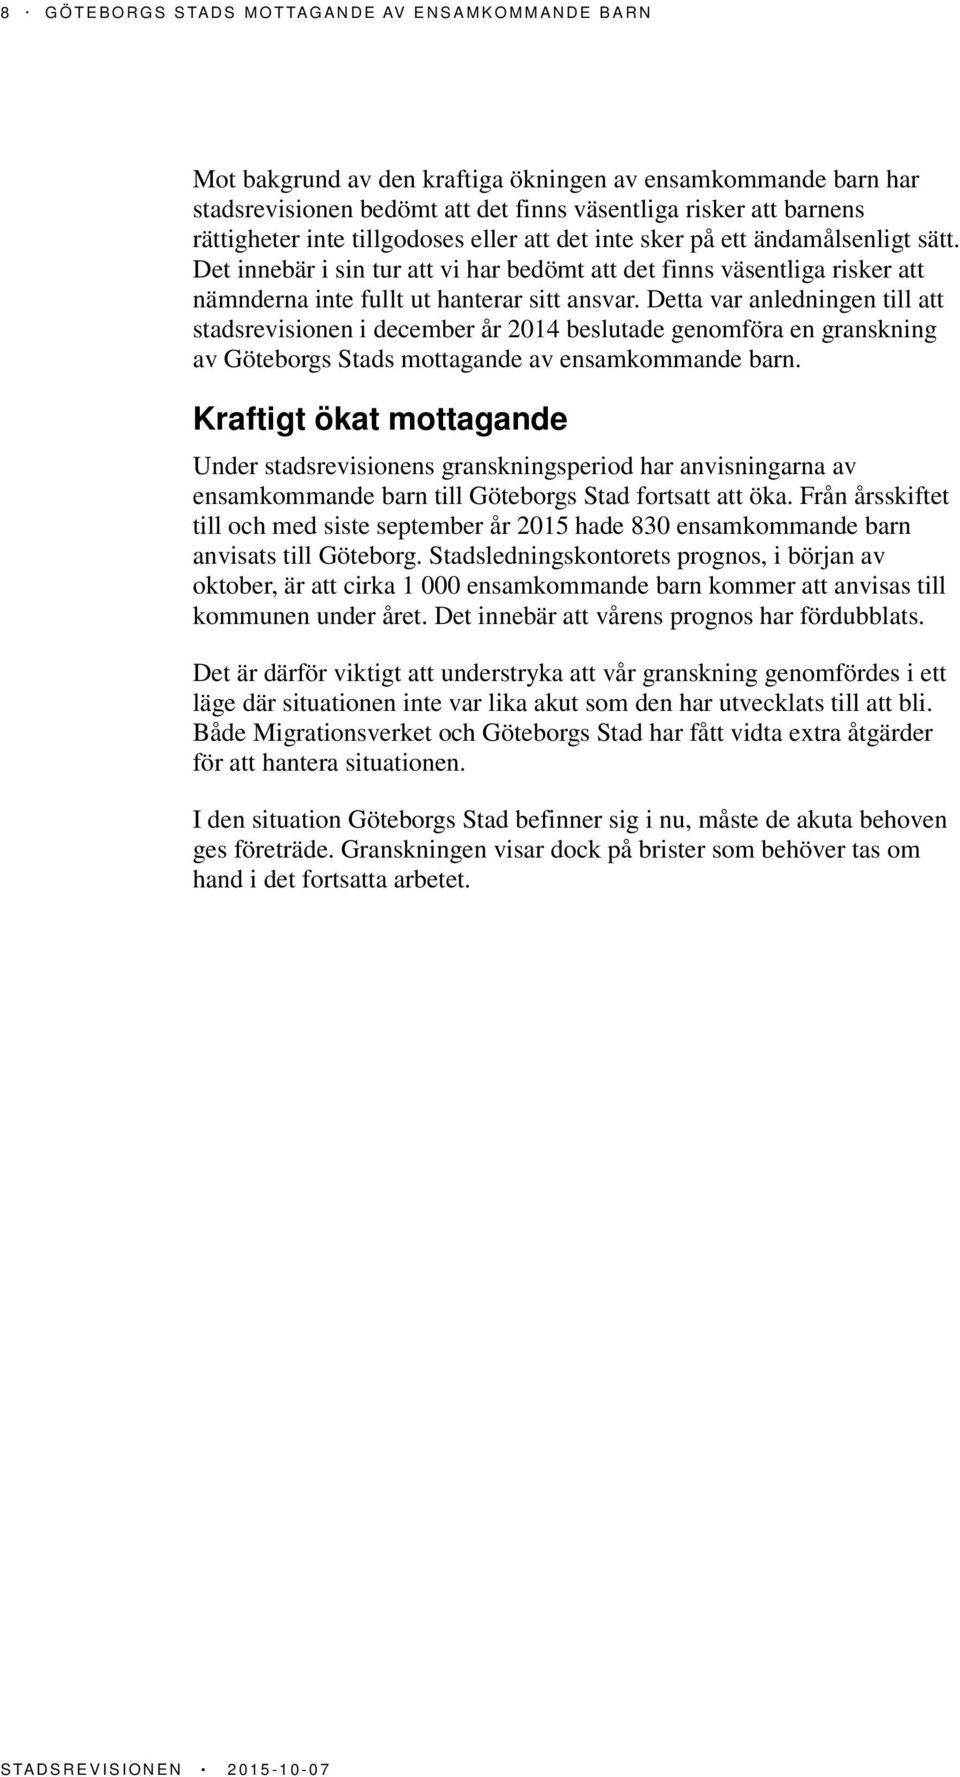 Detta var anledningen till att stadsrevisionen i december år 2014 beslutade genomföra en granskning av Göteborgs Stads mottagande av ensamkommande barn.